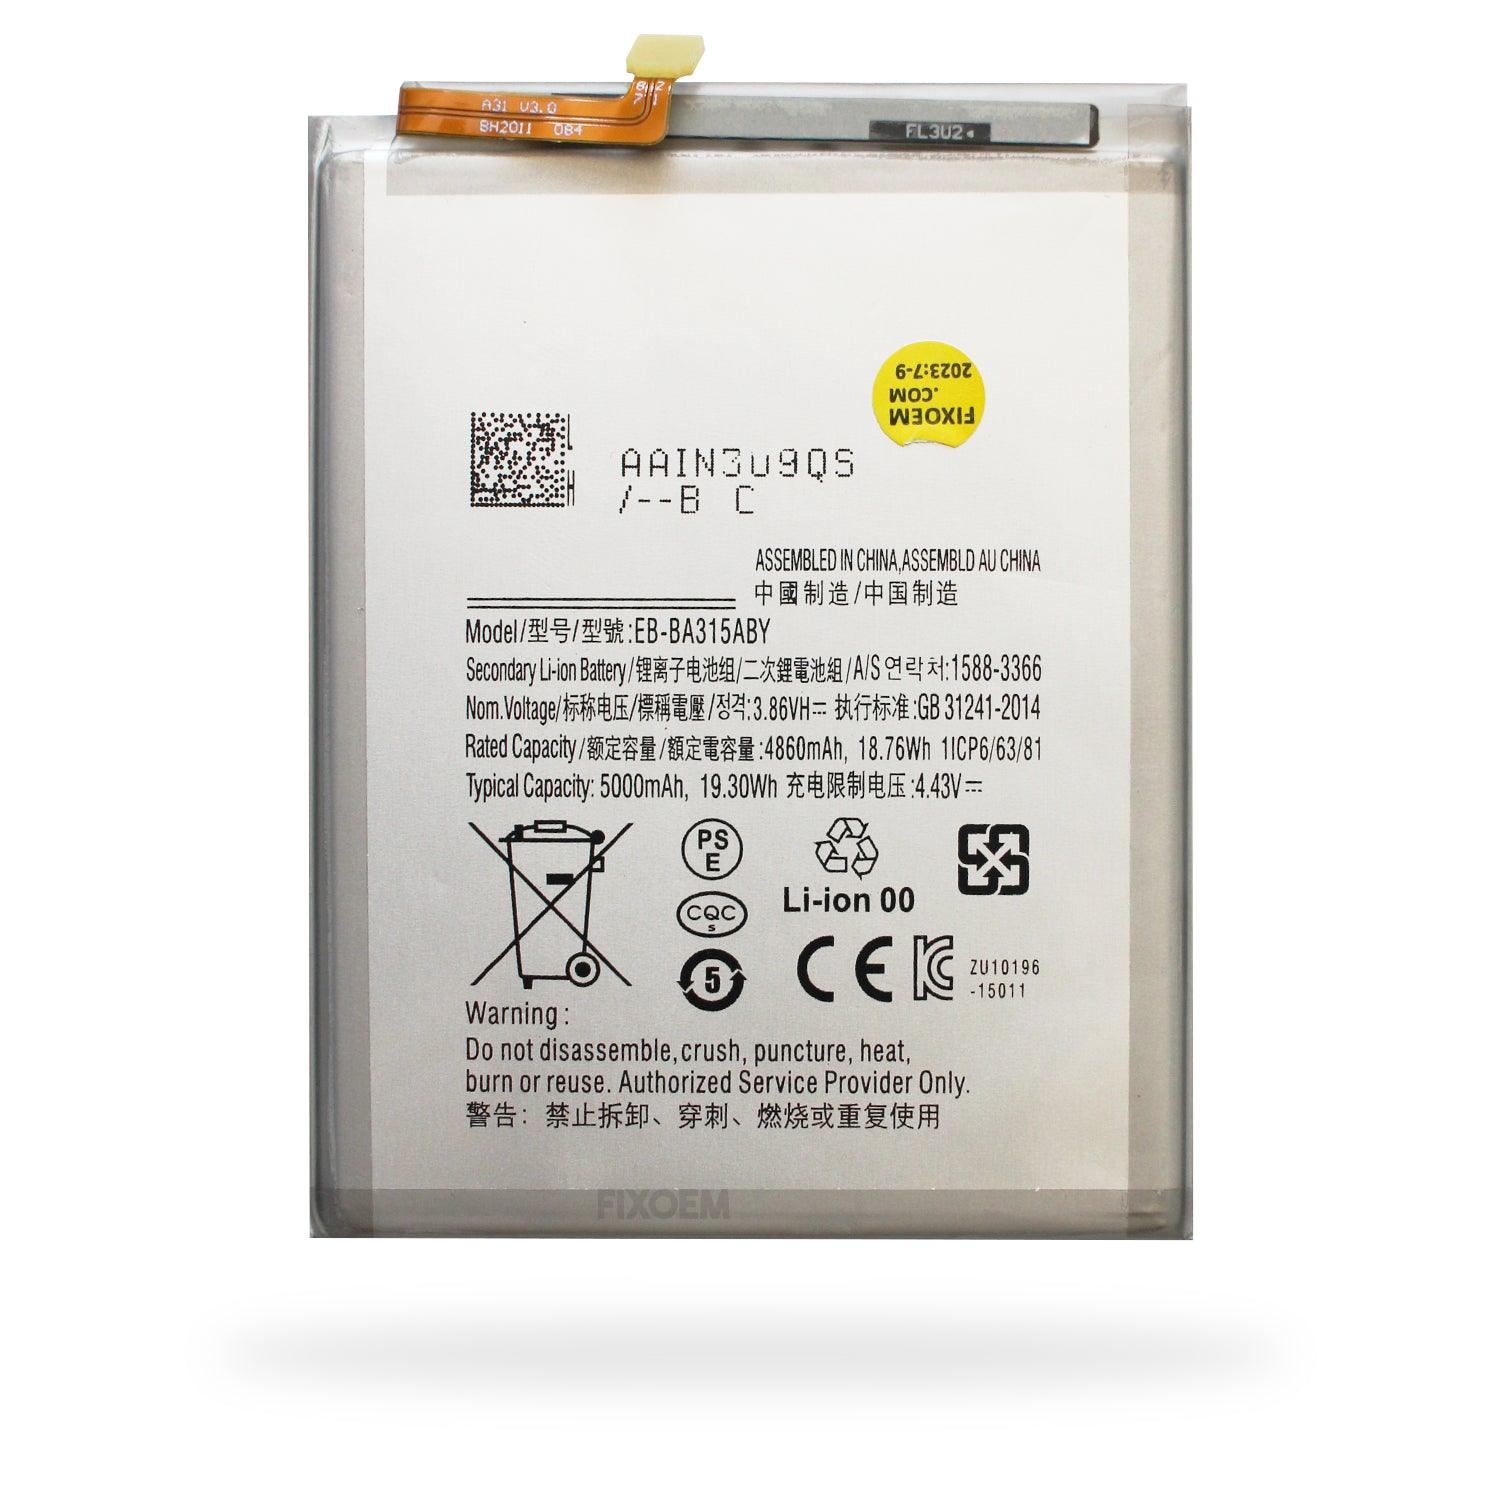 Bateria Samsung A31/ A32 4G/ A22 4G/ A72/ A31S Eb-ba315aby a solo $ 130.00 Refaccion y puestos celulares, refurbish y microelectronica.- FixOEM